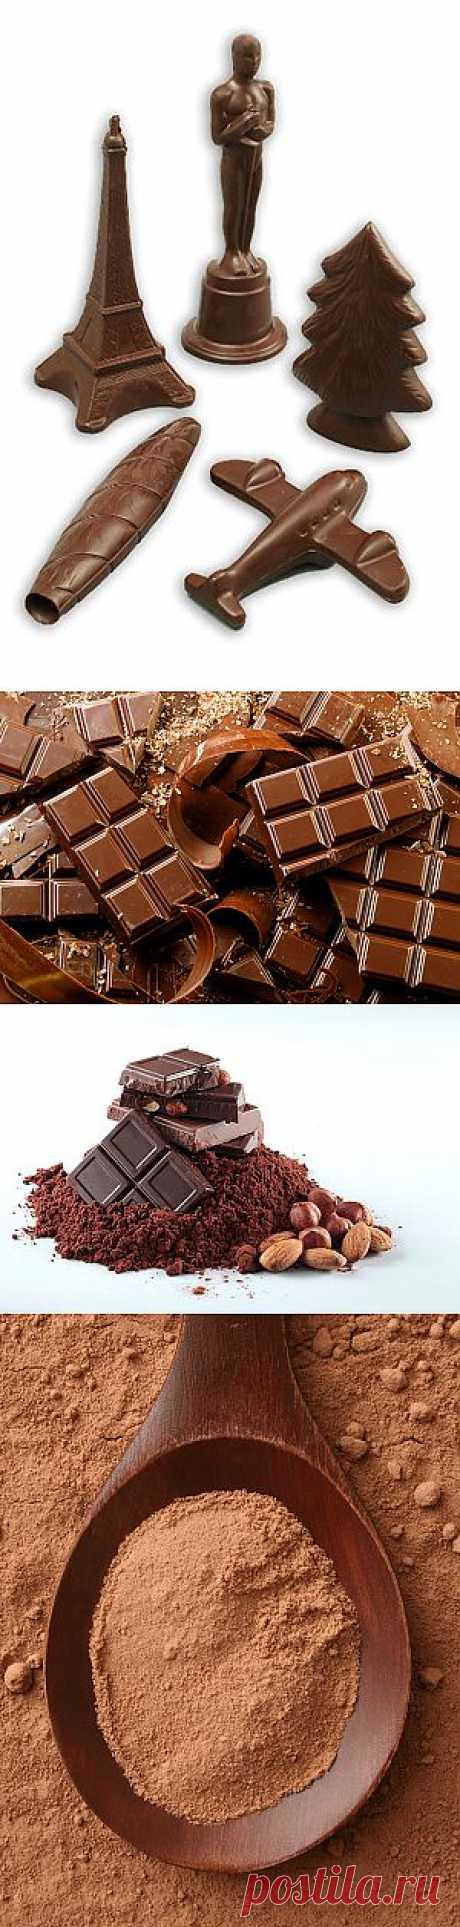 Интересные факты о шоколаде | «Страна советов»